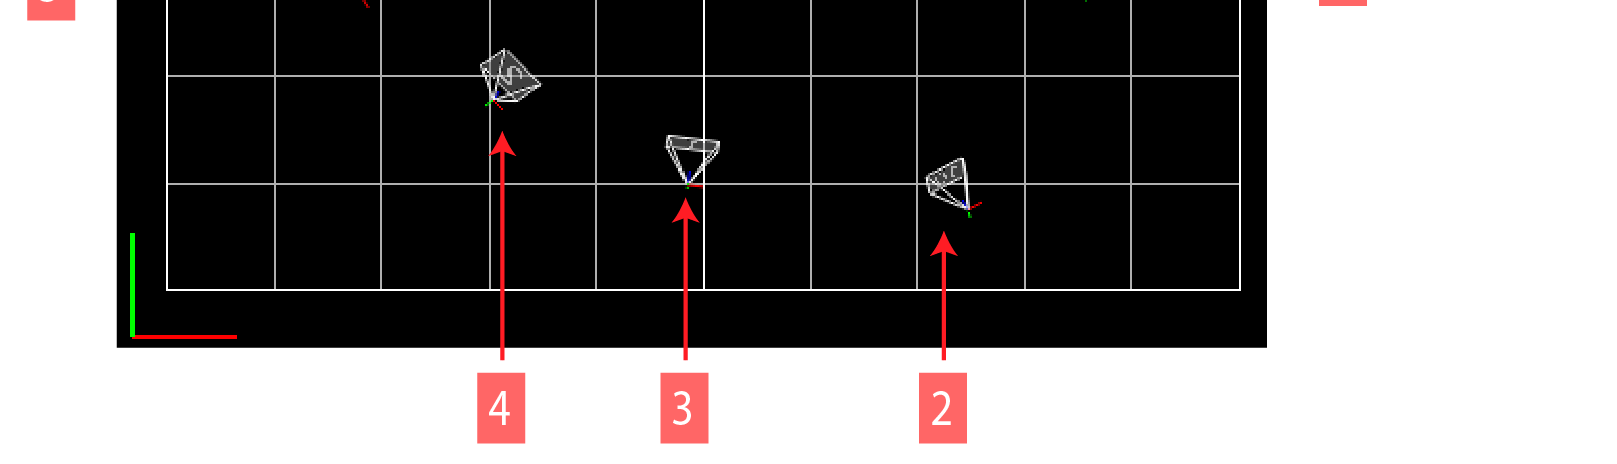 Fig 1.14 - Ordenar as câmaras no sentido dos ponteiro do relógio, tendo como referência a porta principal de entrada do MovLab 1.2.